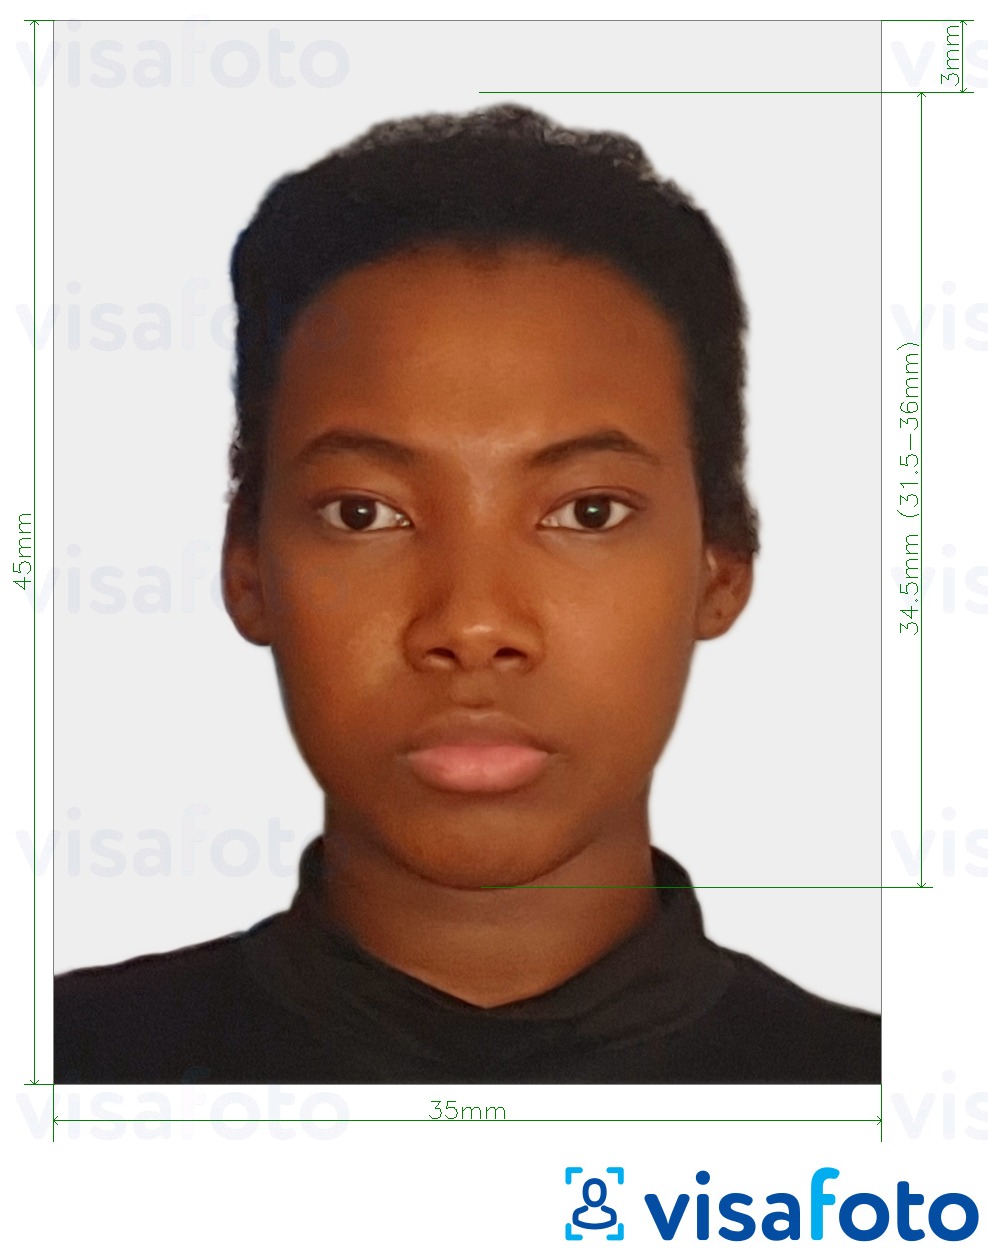 Образец фотографии для Того паспорт 4.5x3.5 см (45x35 мм) с точными размерами